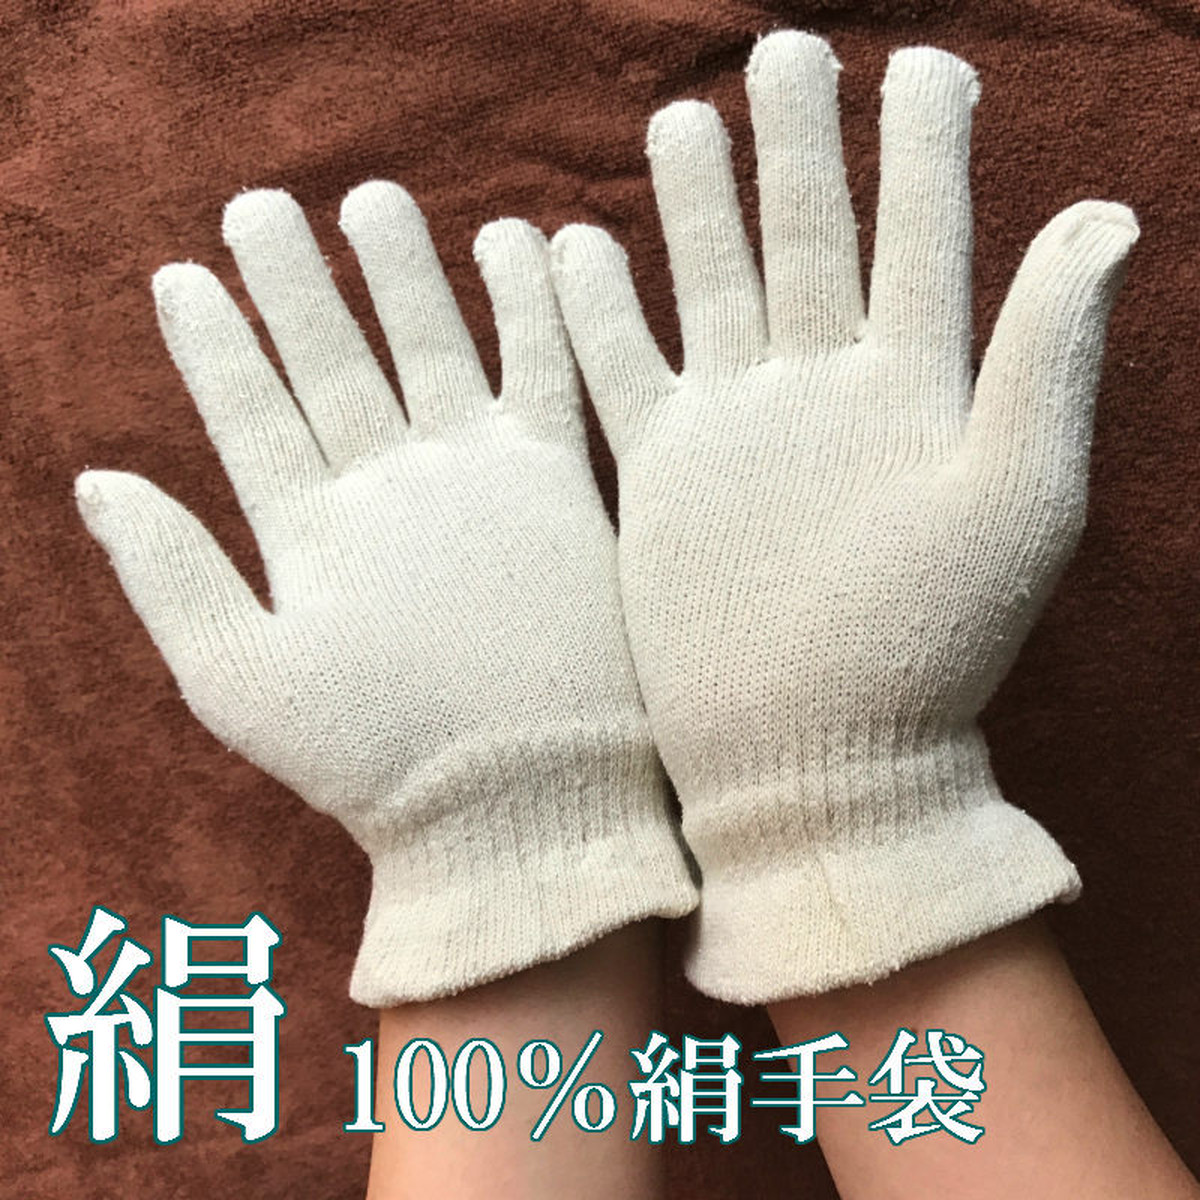 絹手袋 シルク手袋 ガルシャナ アーユルヴェーダ | アーユルヴェーダと植物療法の店 アーユス